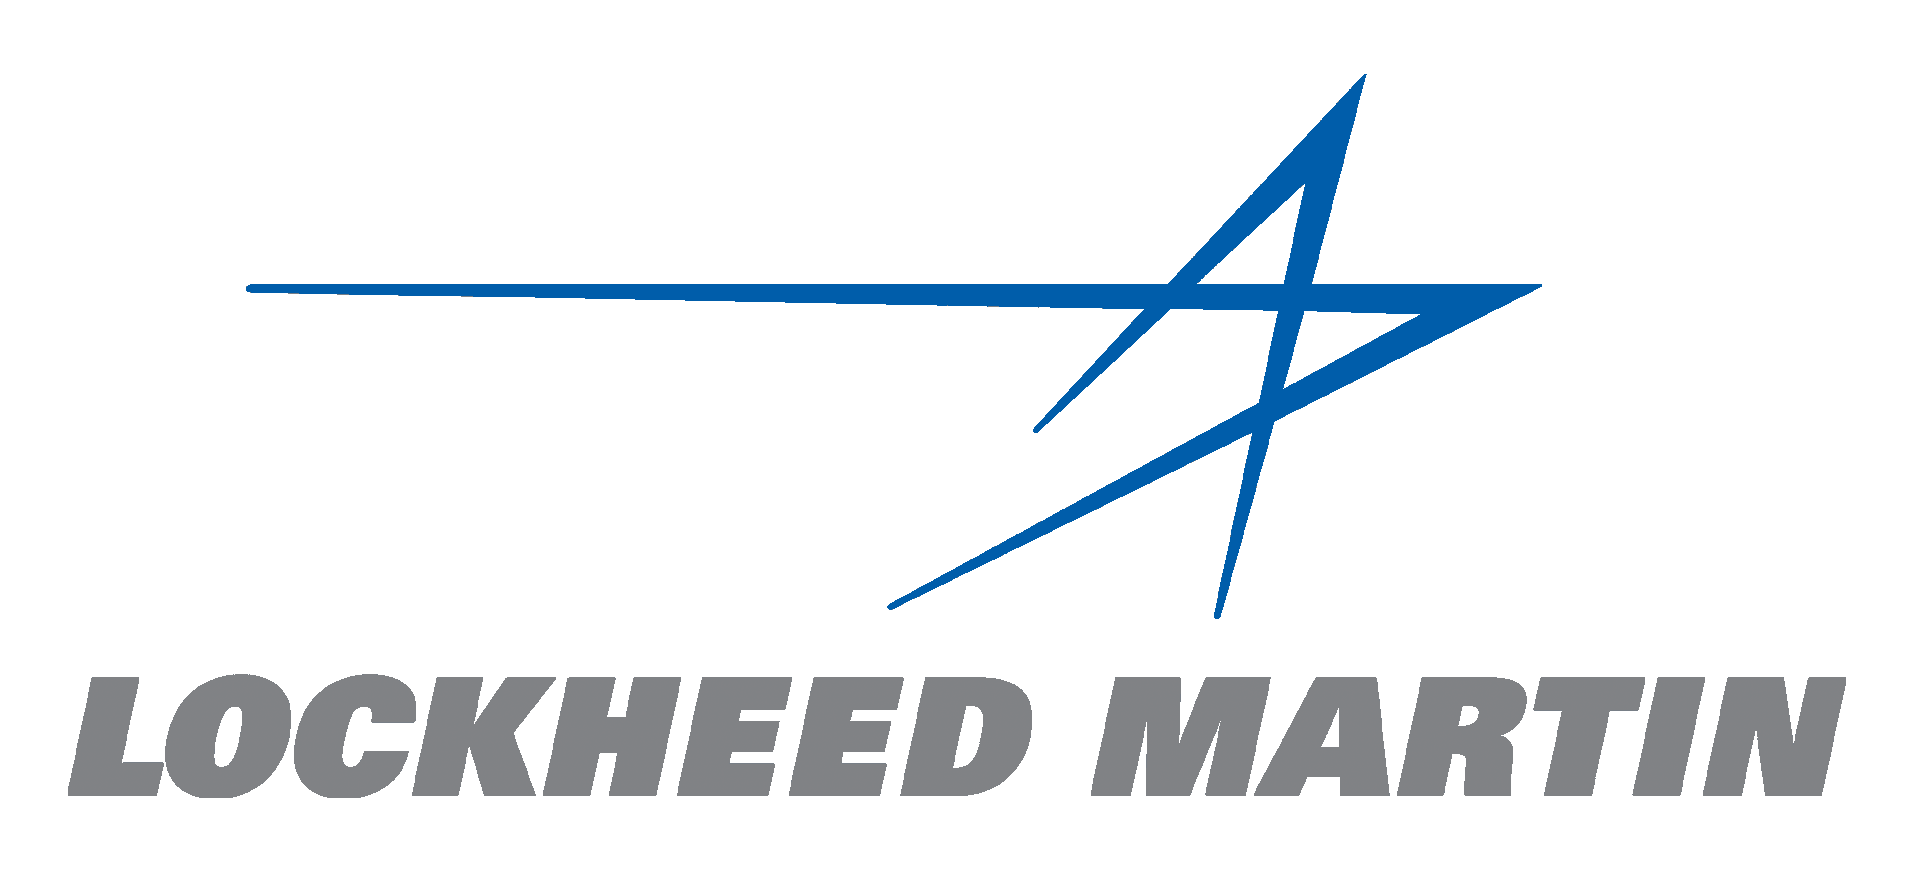 Lockheed Martin Logo PNG Image